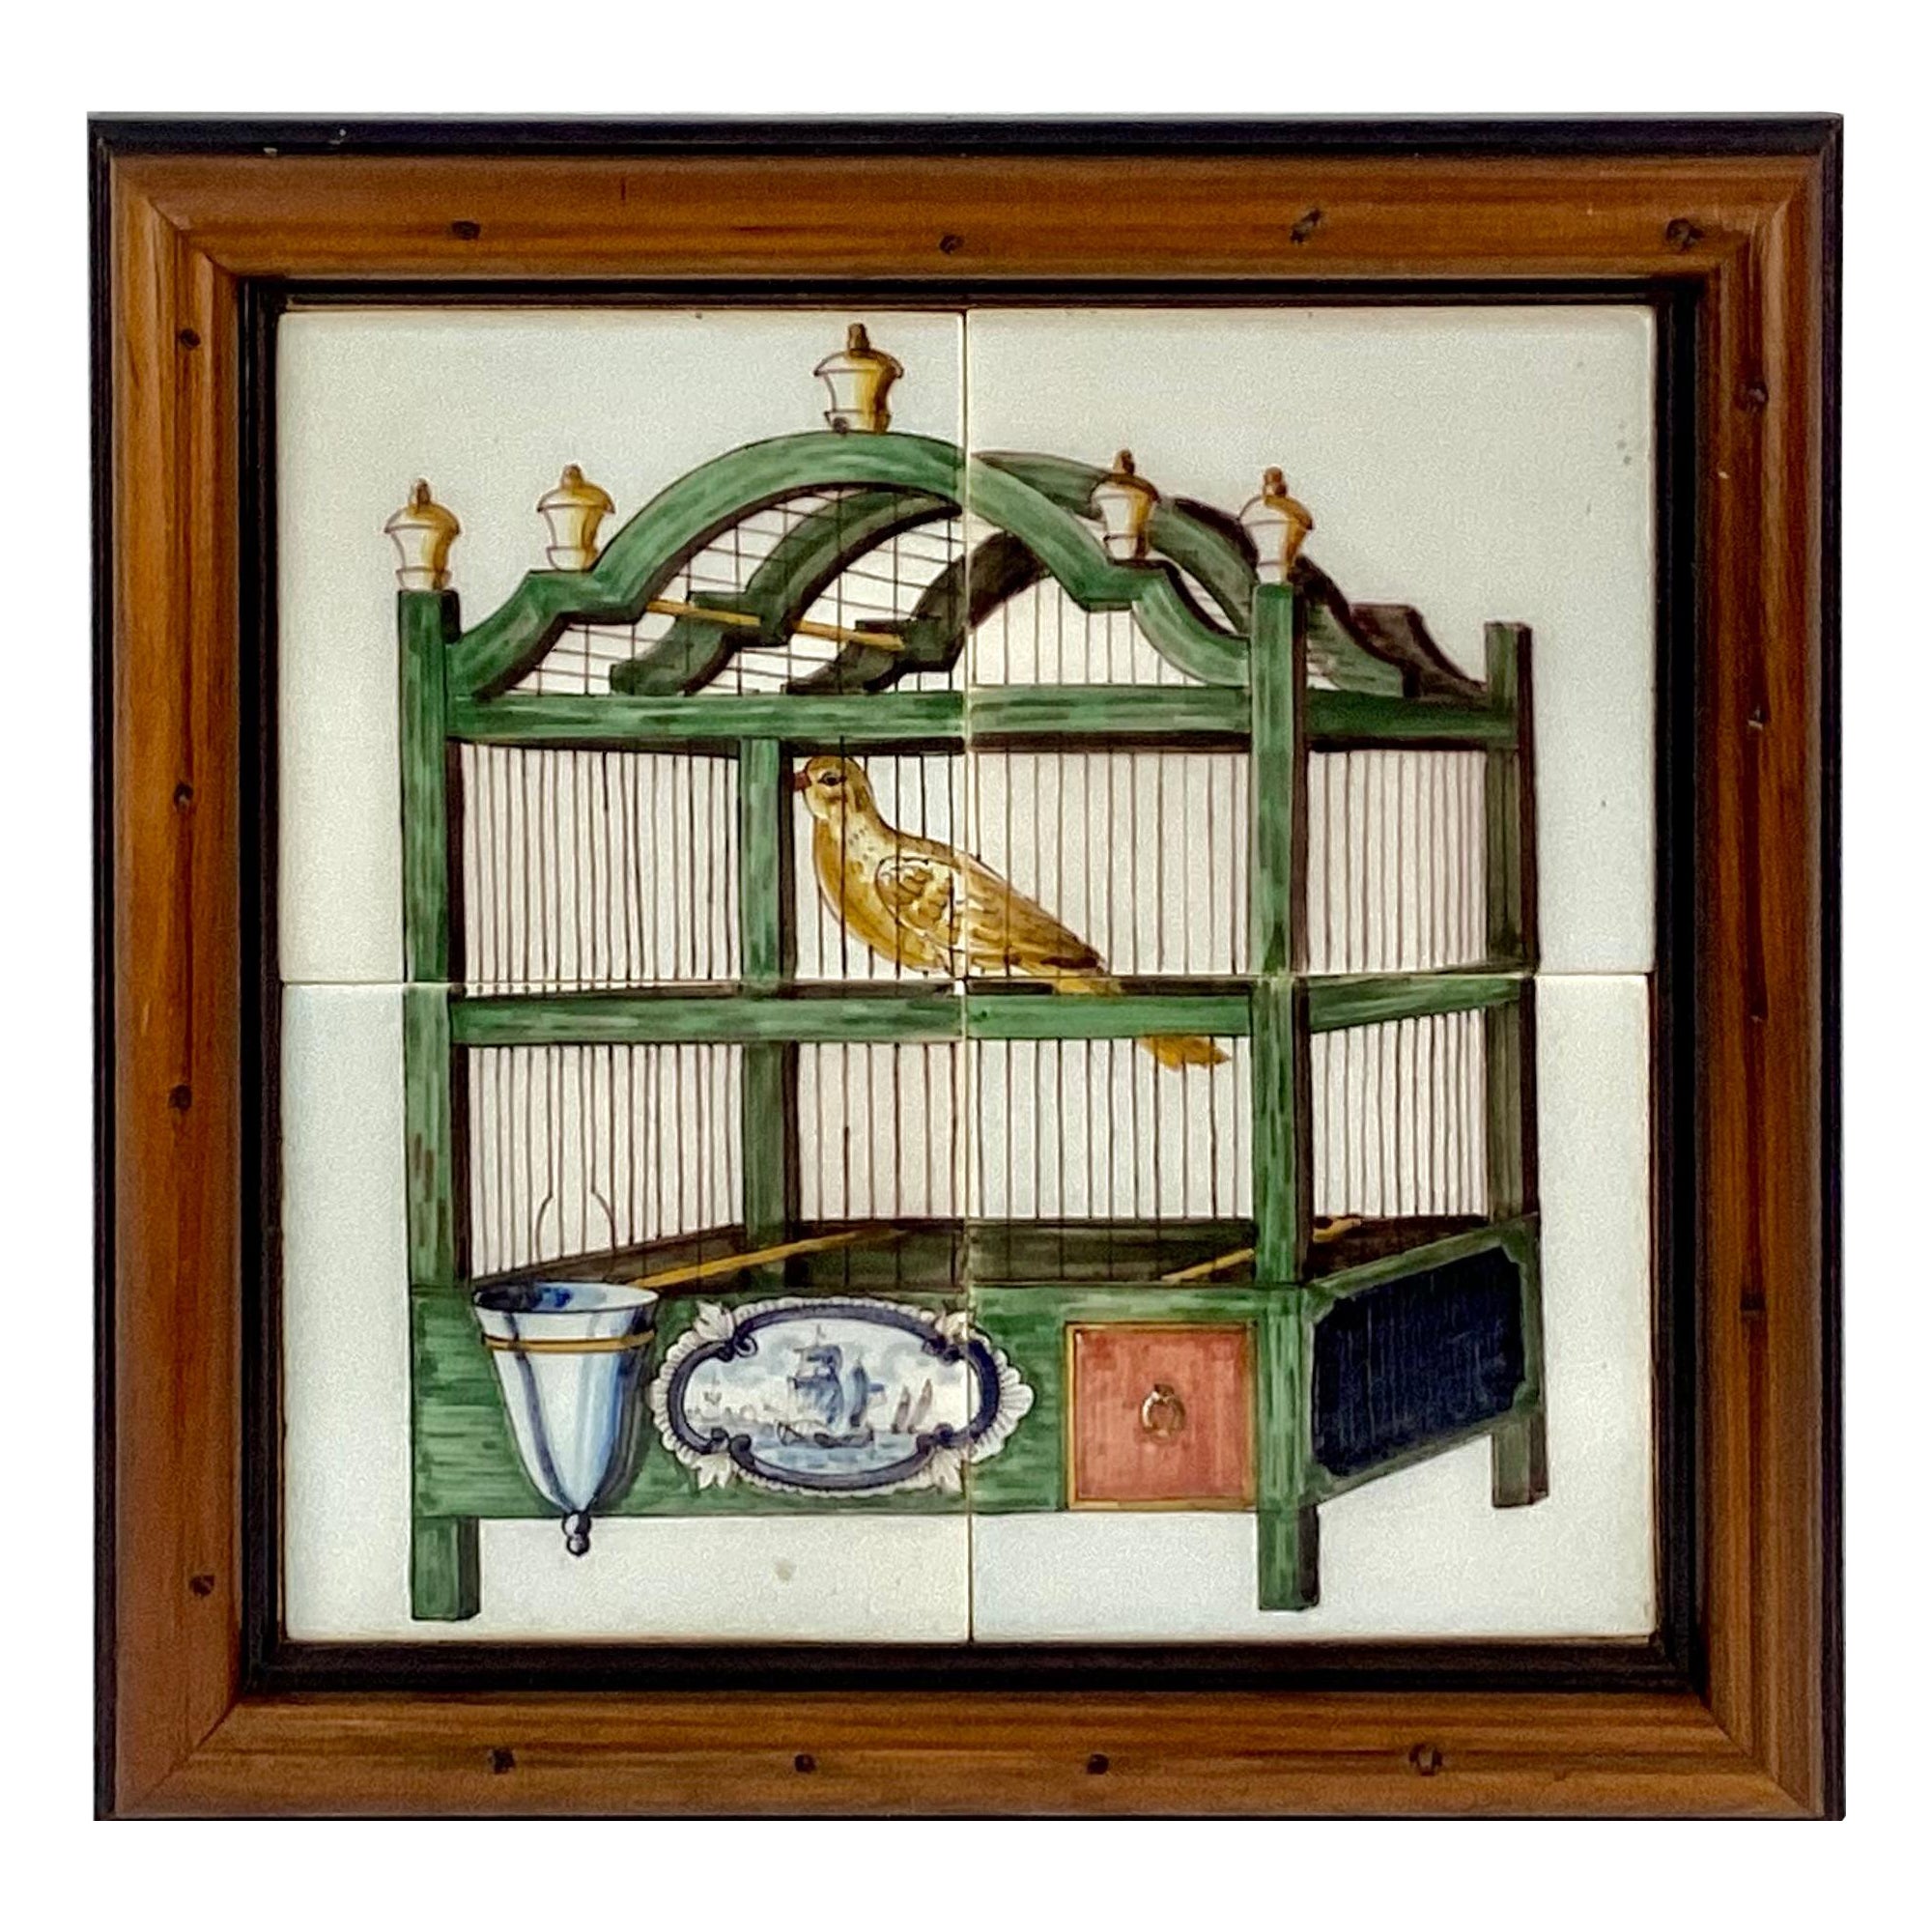 Delft 'Bird In Cage' Tile Mural, Framed